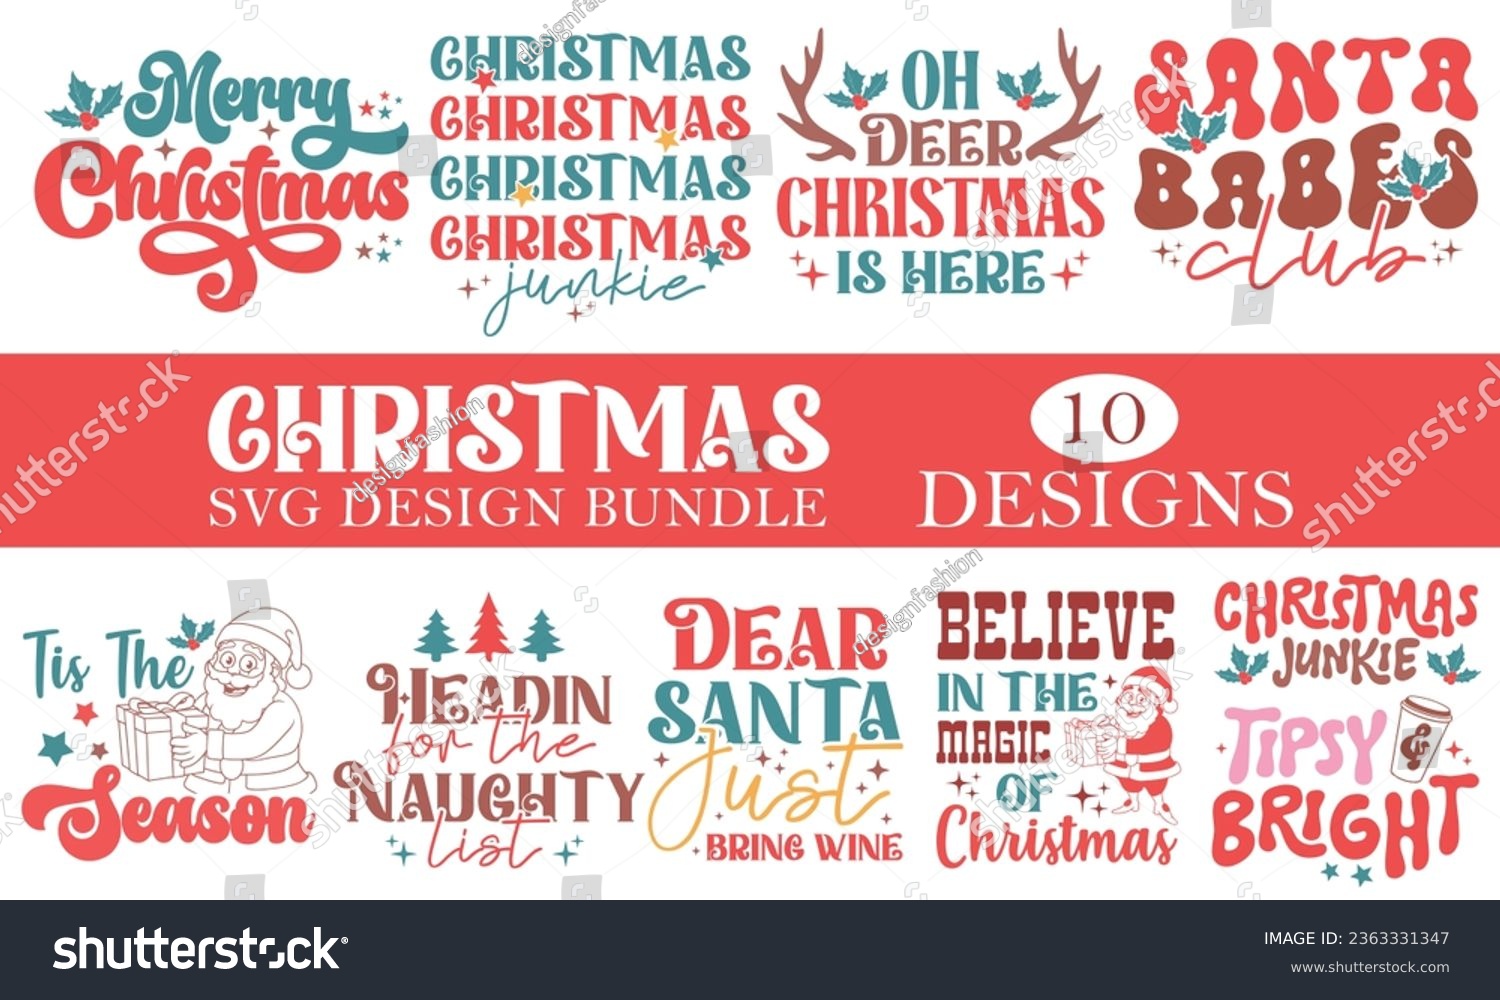 SVG of  Christmas SVG Design Bundle EPS svg